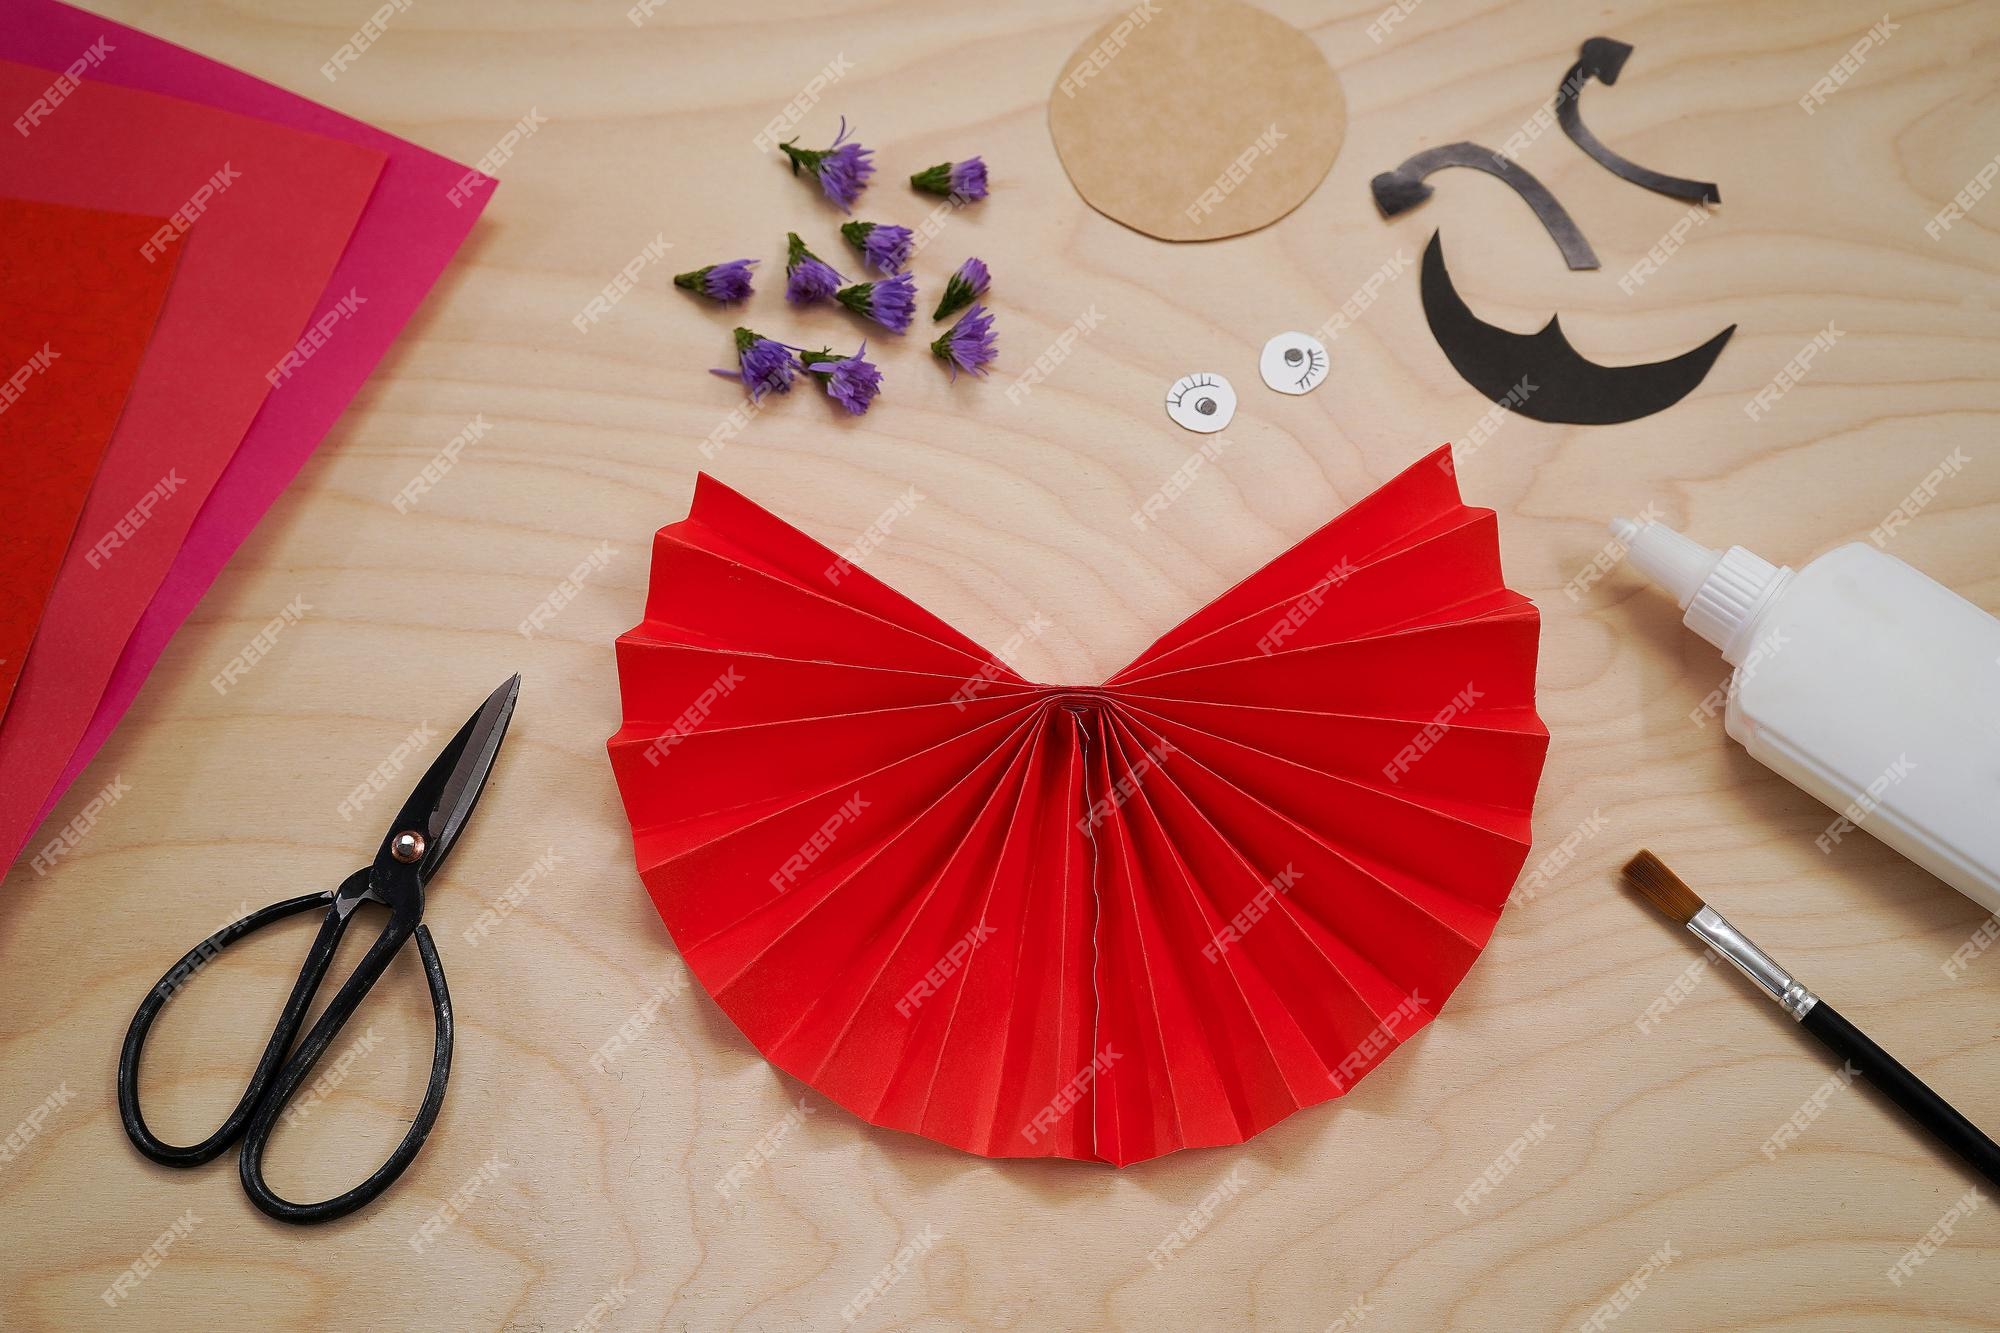 Paso a paso proceso diy manualidad artesanal mariquita hecha de papel y  flores paso 4 pega los dos extremos del acordeón para hacer un semicírculo  símbolo de amor rojo | Foto Premium